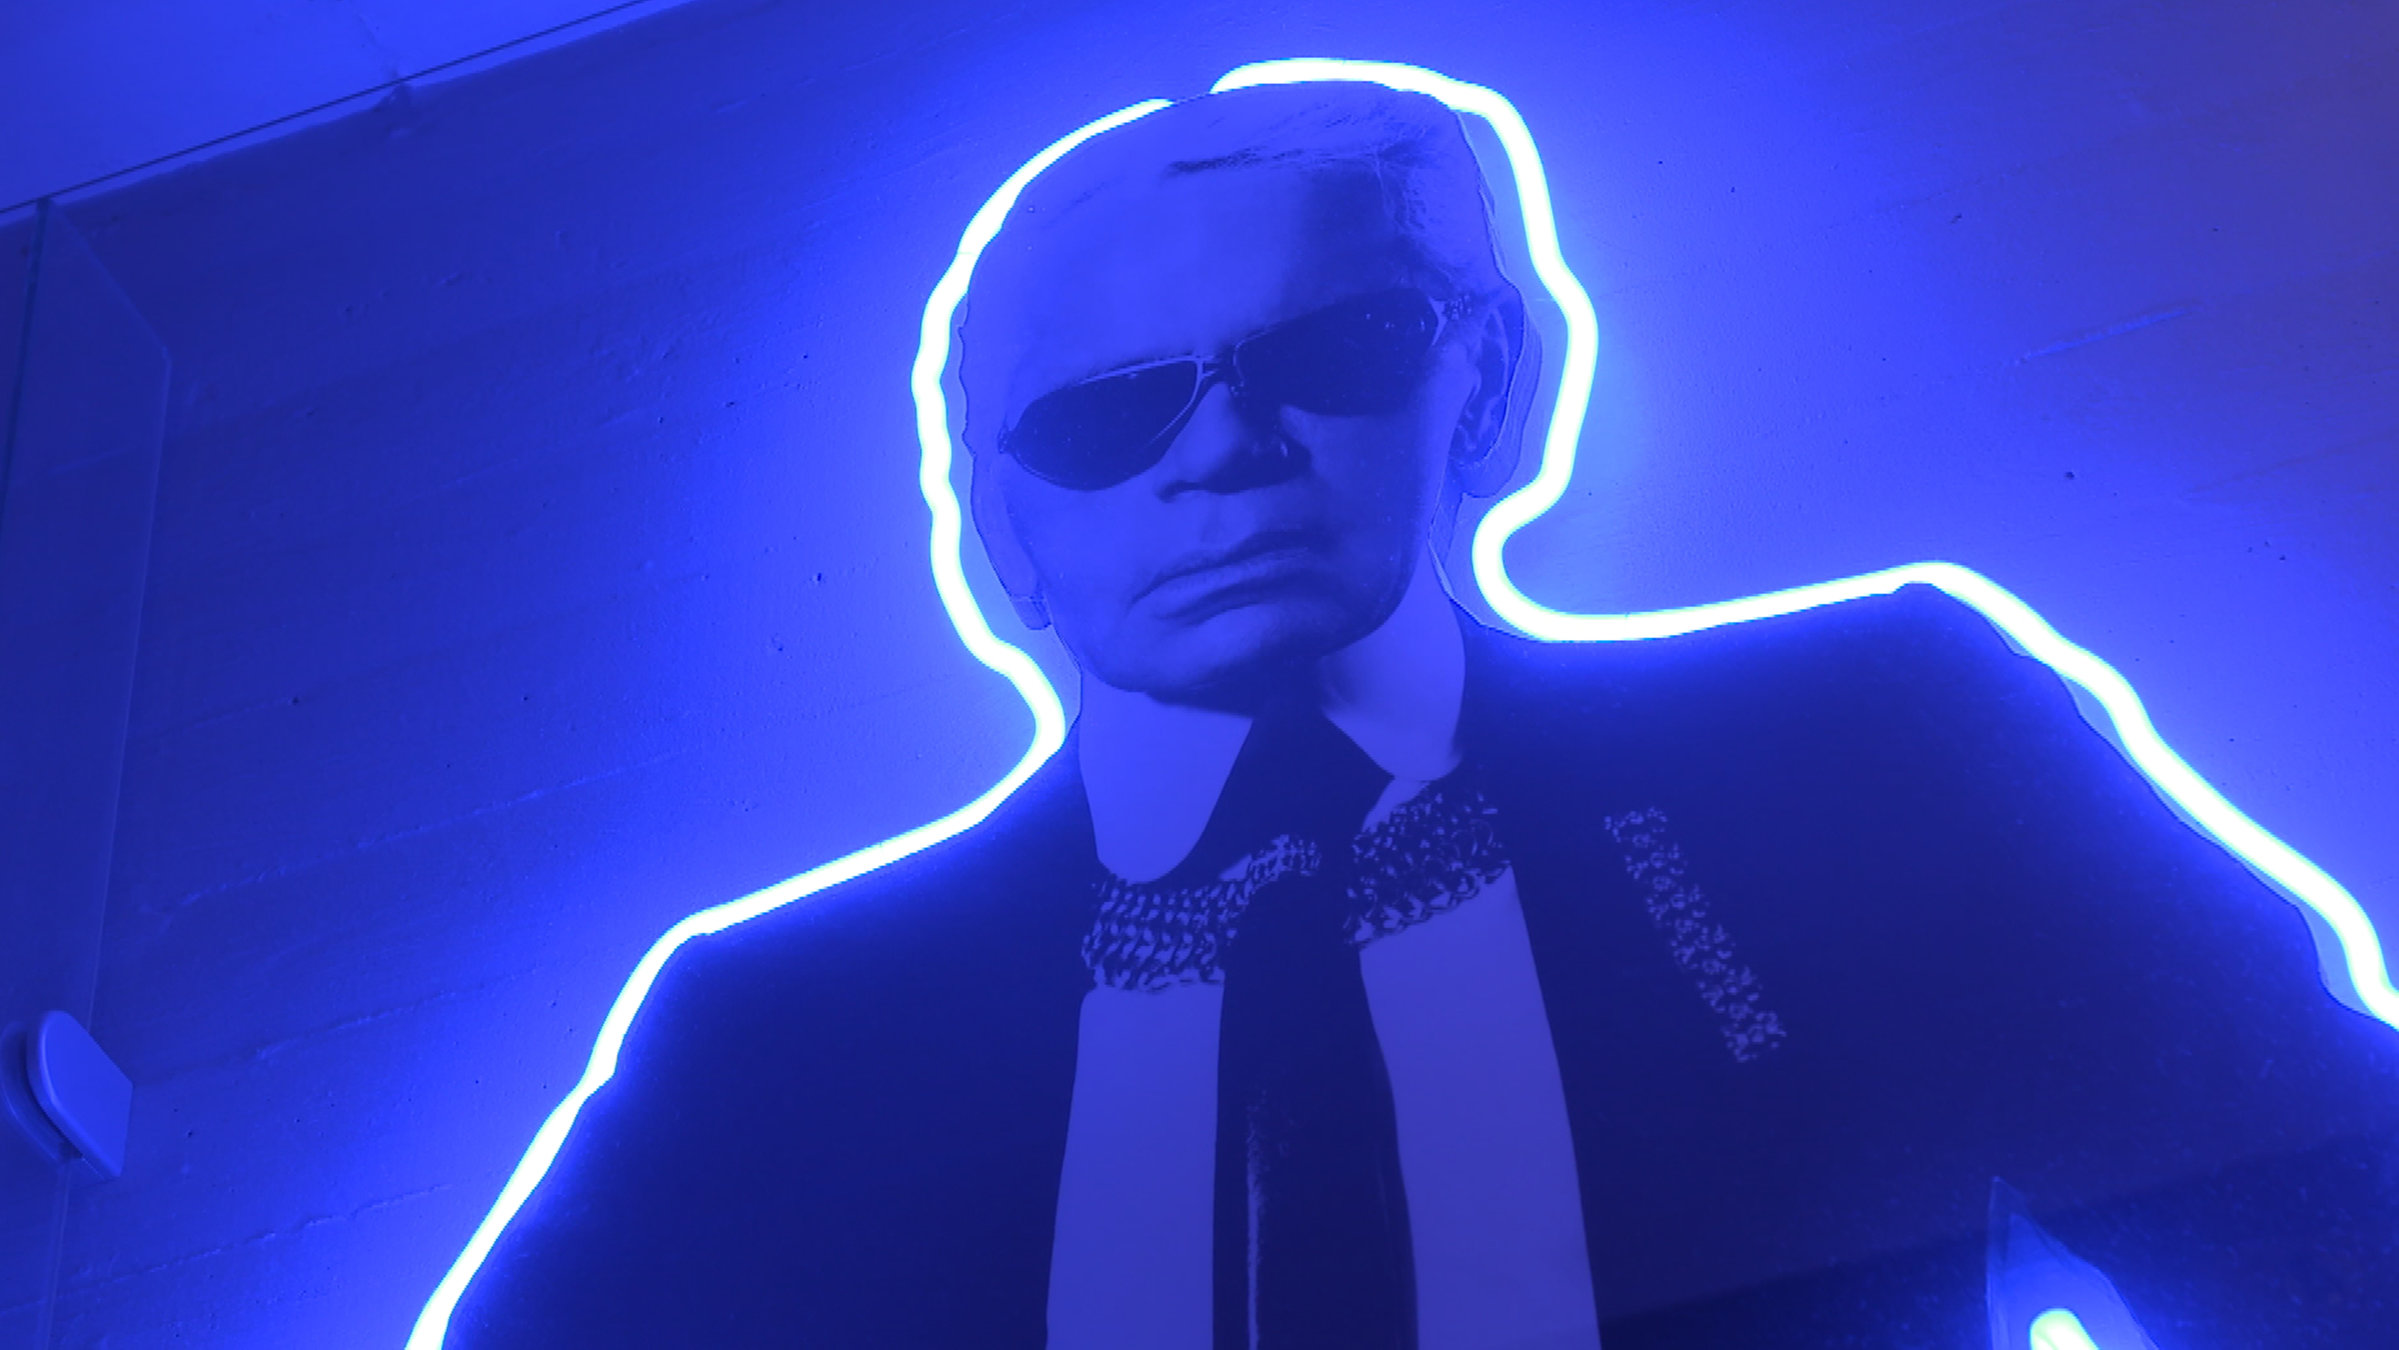 "ZDF-History: Karl Lagerfeld - Eine deutsche Legende": Die Umrisse von Karl Lagerfeld sind von einer blau leuchtenden Neonröhre nachgezeichnet. Das komplette Bild ist in blaues Licht getaucht.